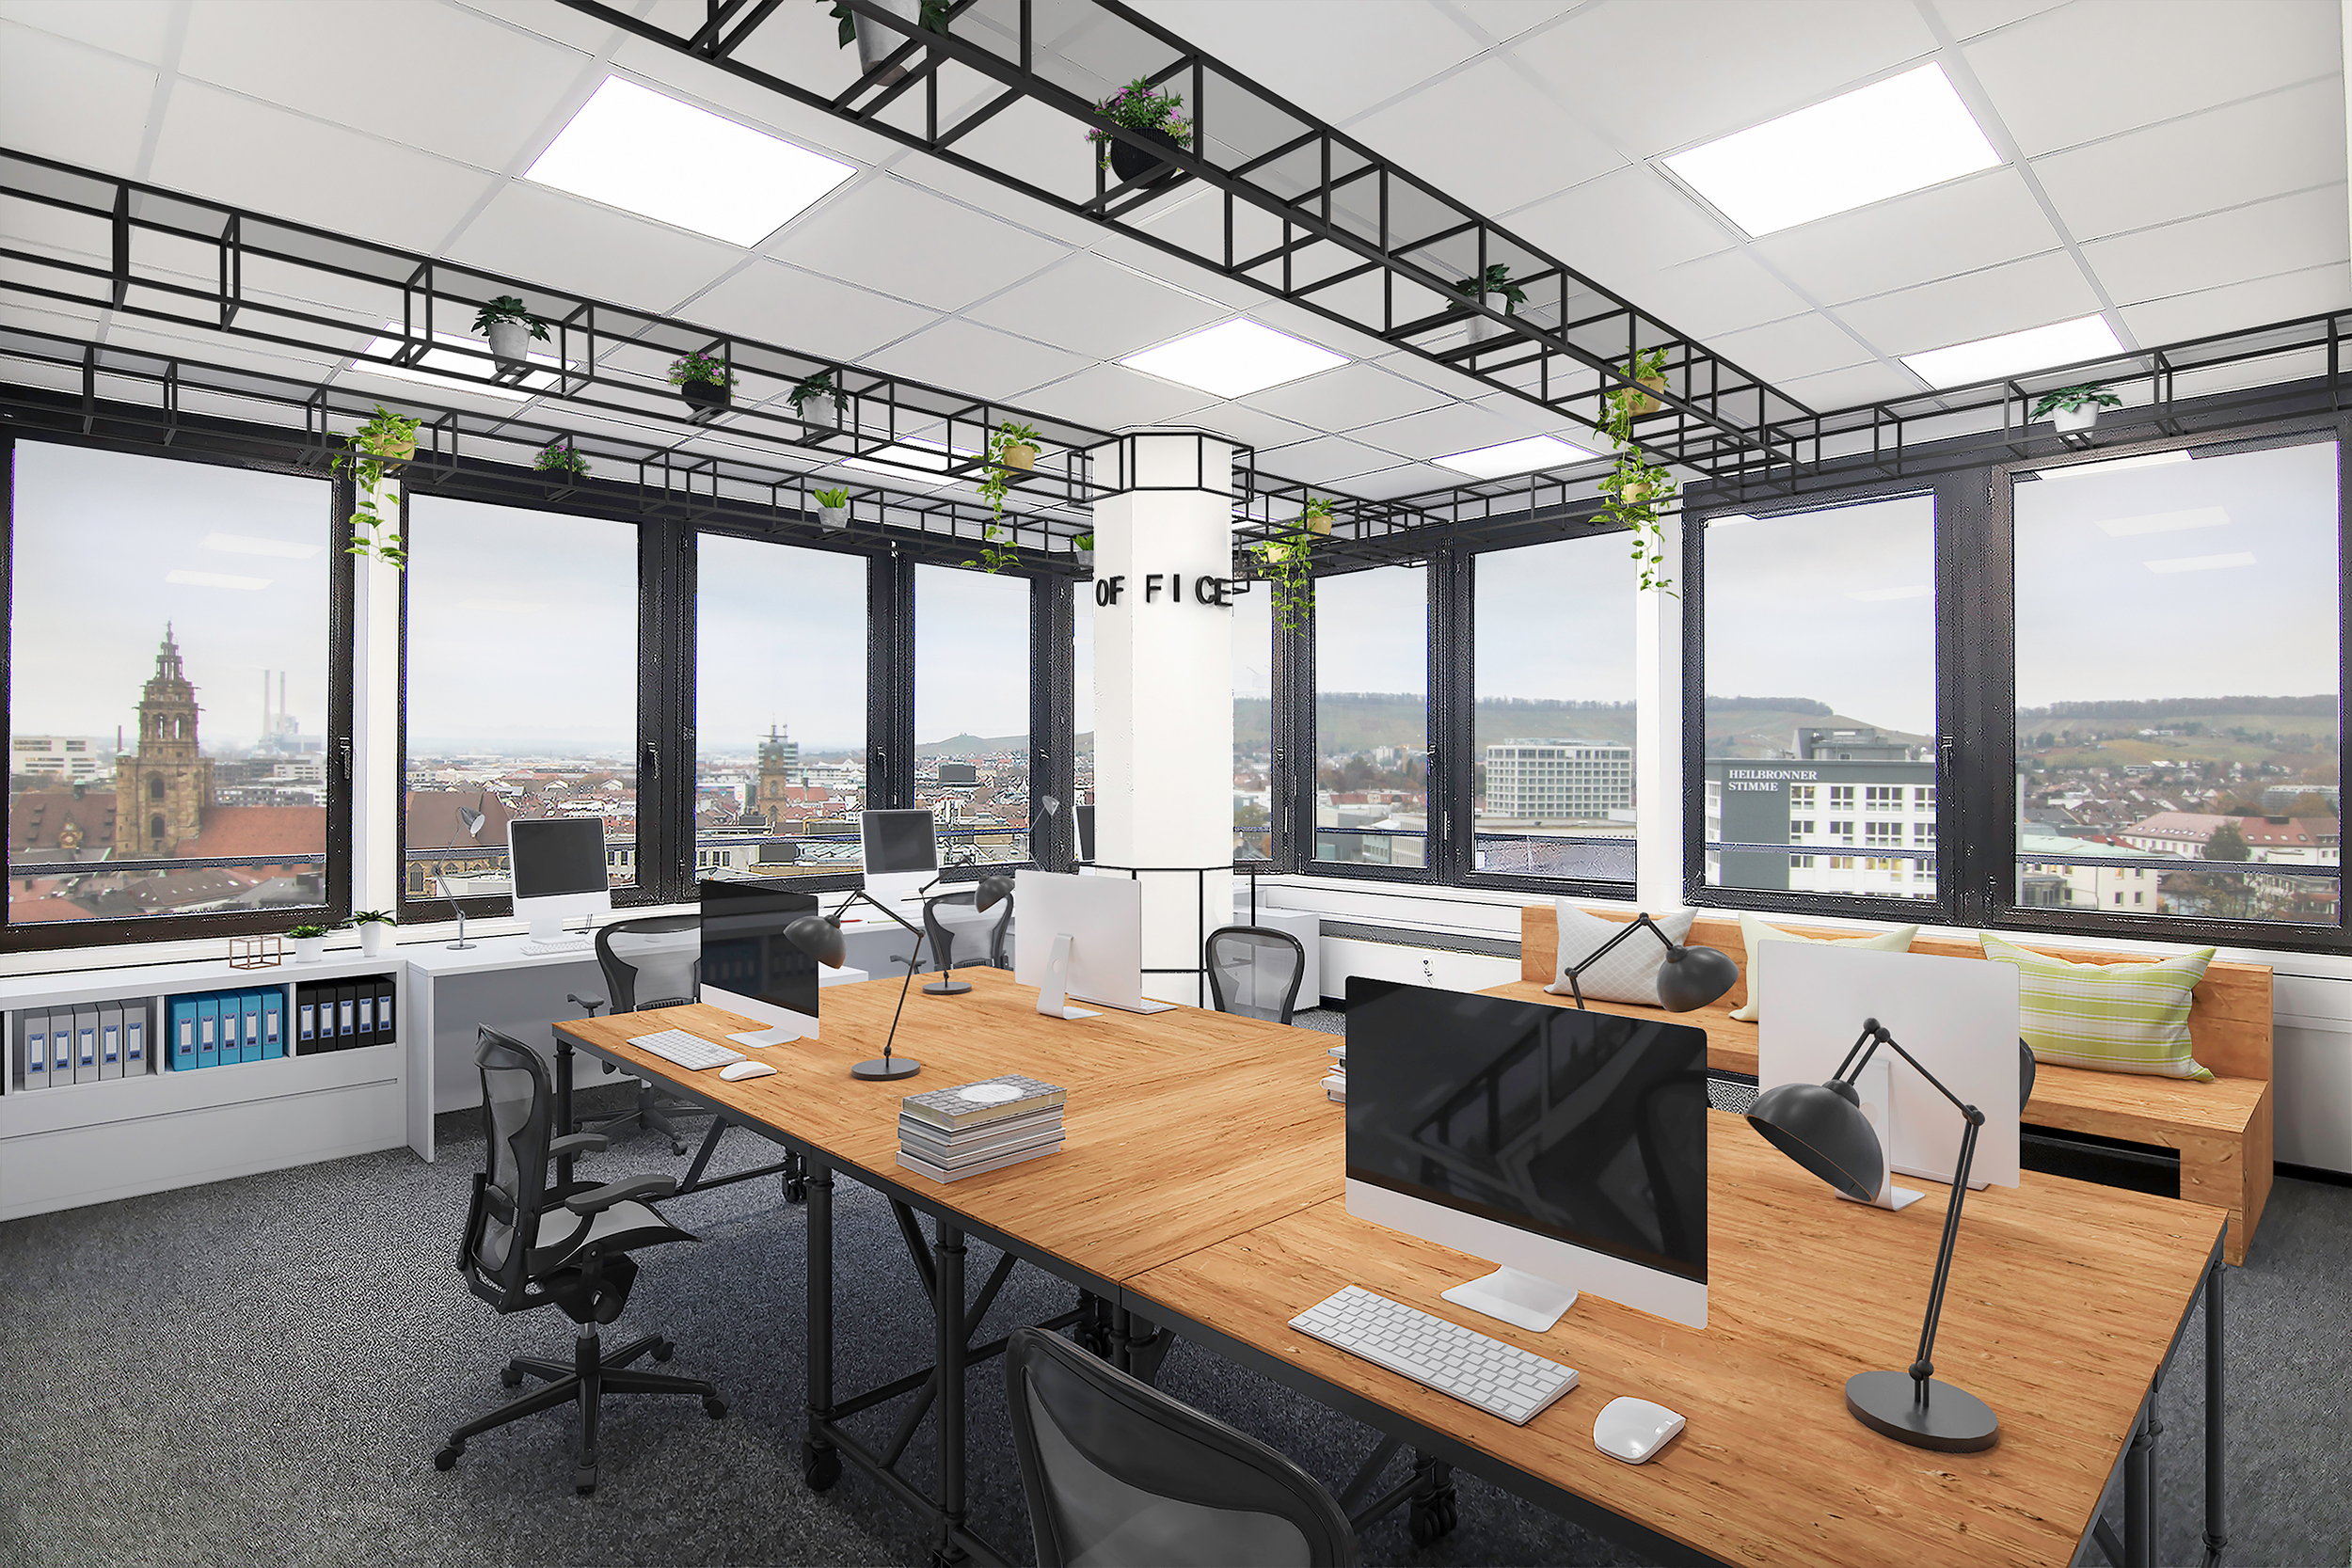 Gewerbe- oder Bürofläche im Wollhaus mieten: Das Bild zeigt eine mögliche Nutzung der Büroflächen im Turm